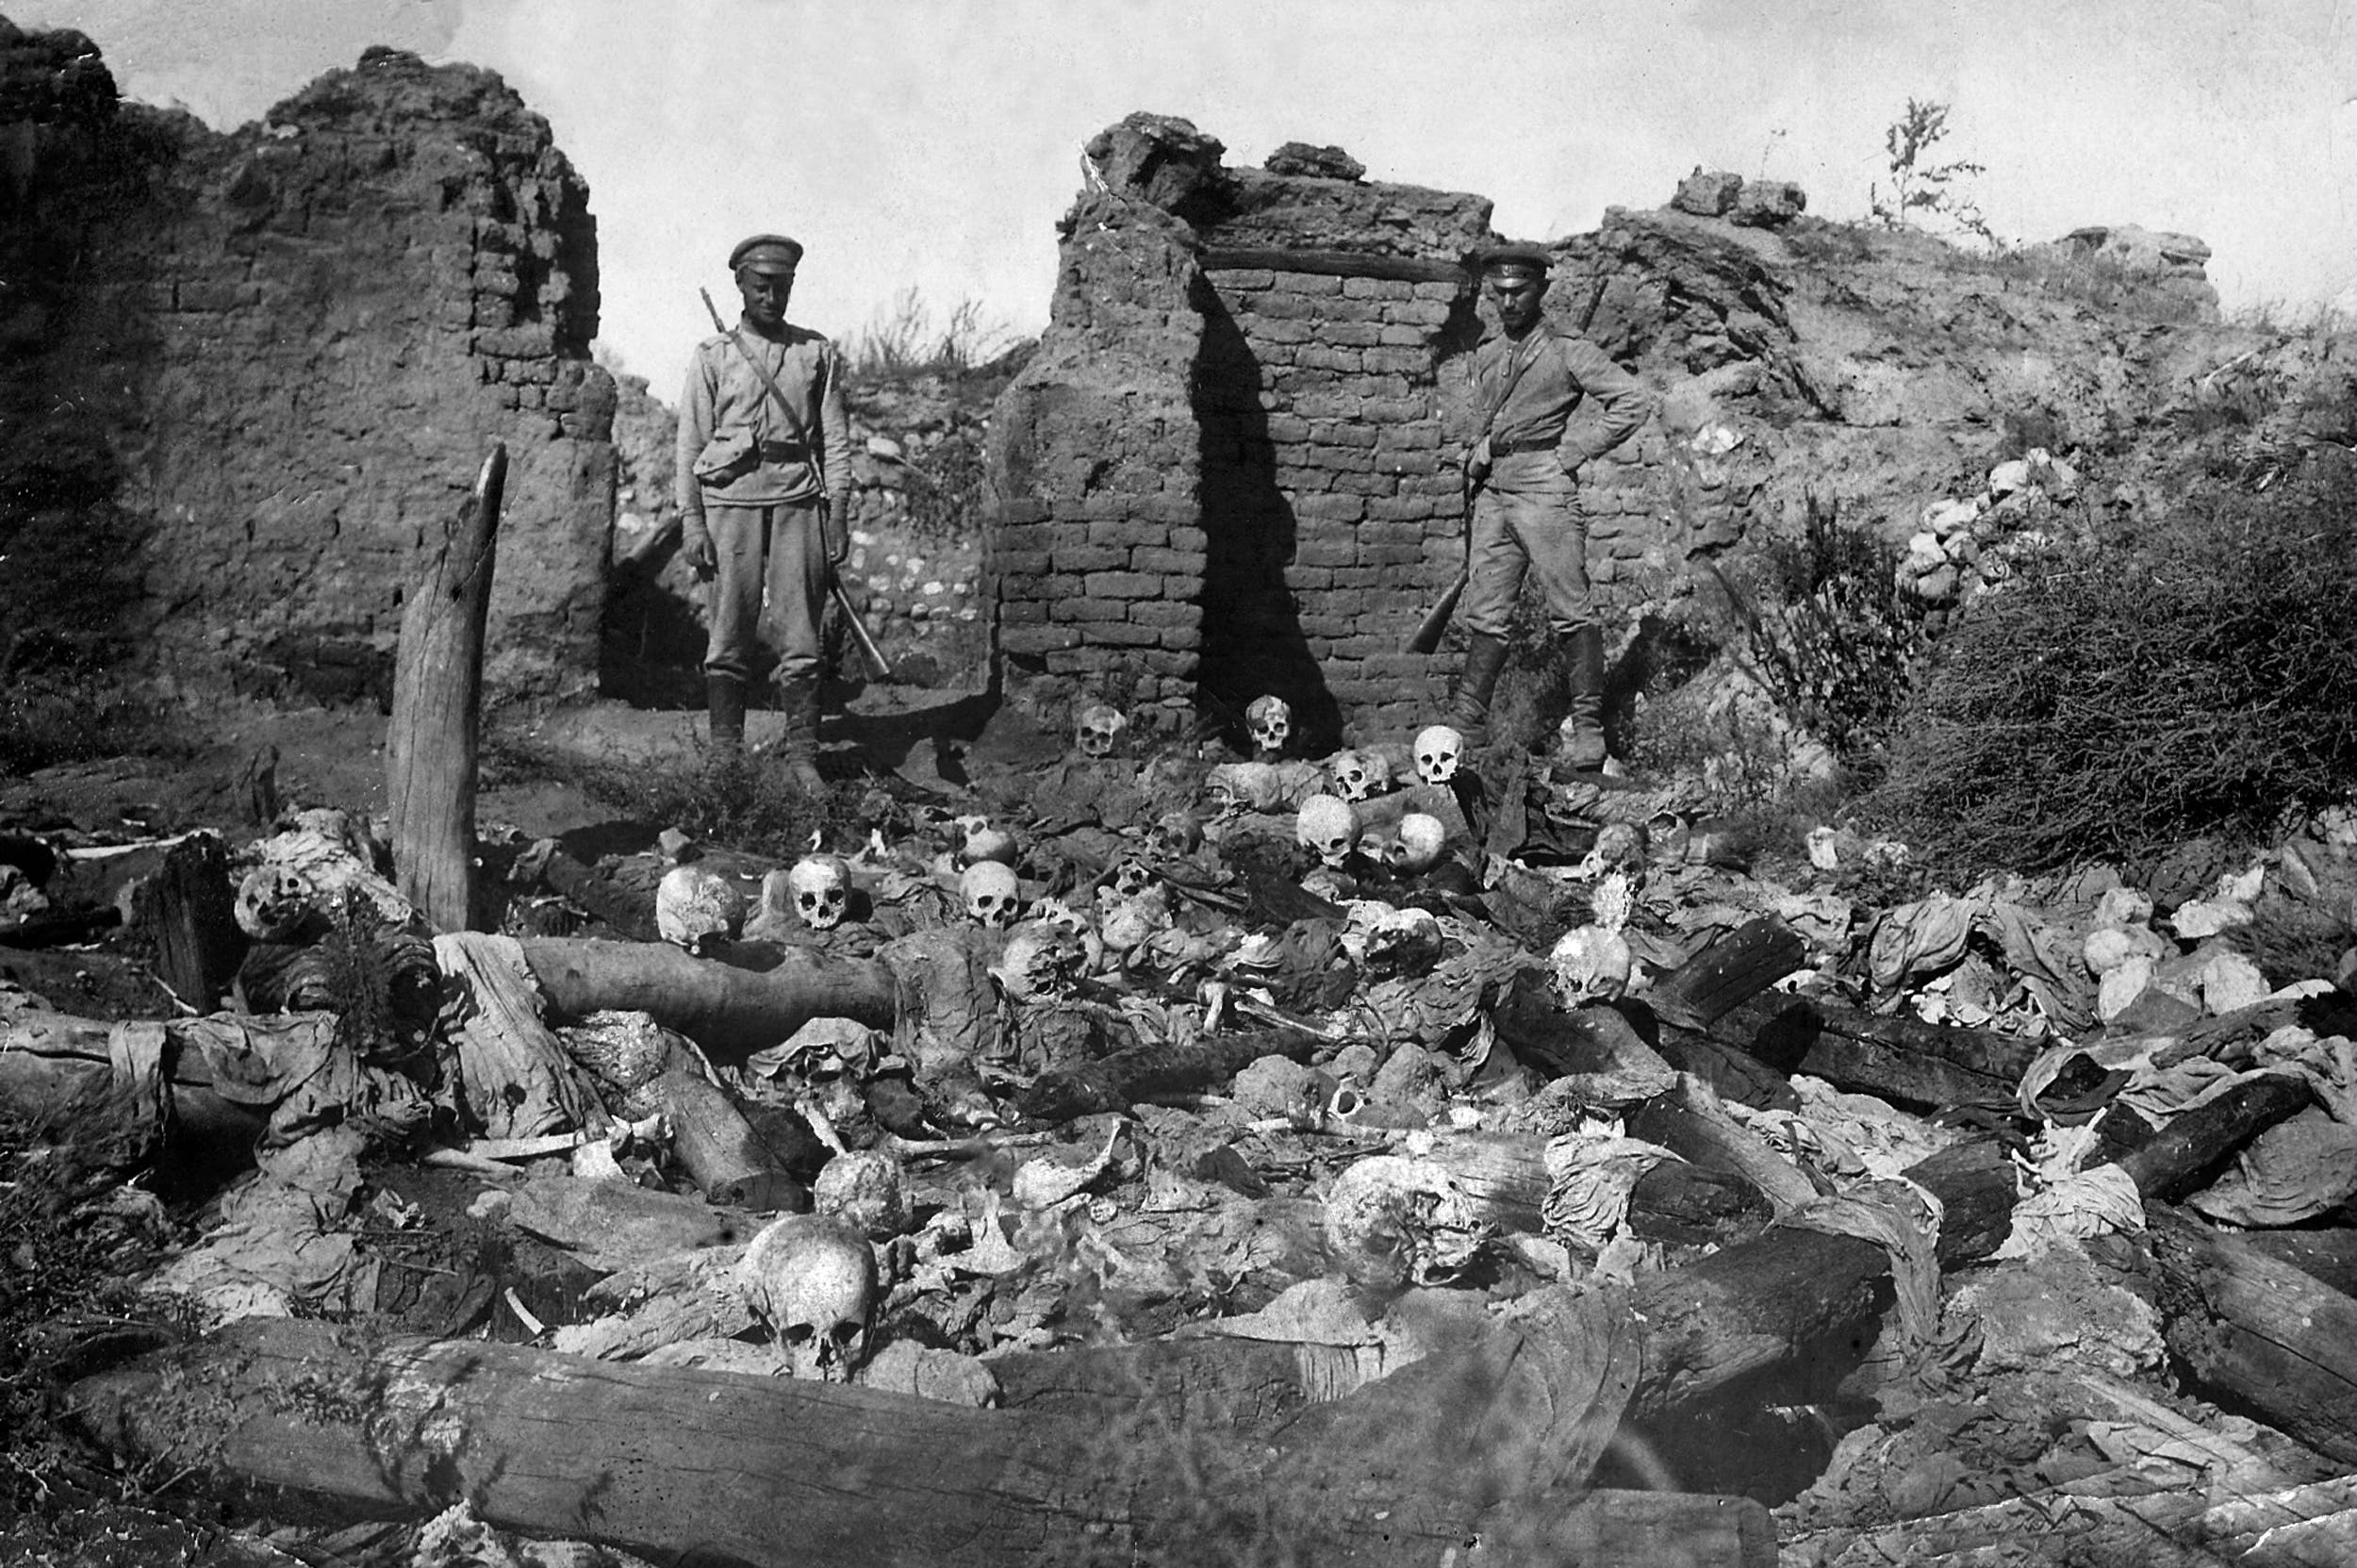 صورة نشرها معهد متحف الإبادة الجماعية للأرمن مؤرخة عام 1915 تُظهر جنوداً يقفون فوق جماجم الضحايا من قرية Sheyxalan الأرمنية في وادي موش على جبهة القوقاز خلال الحرب العالمية الأولى